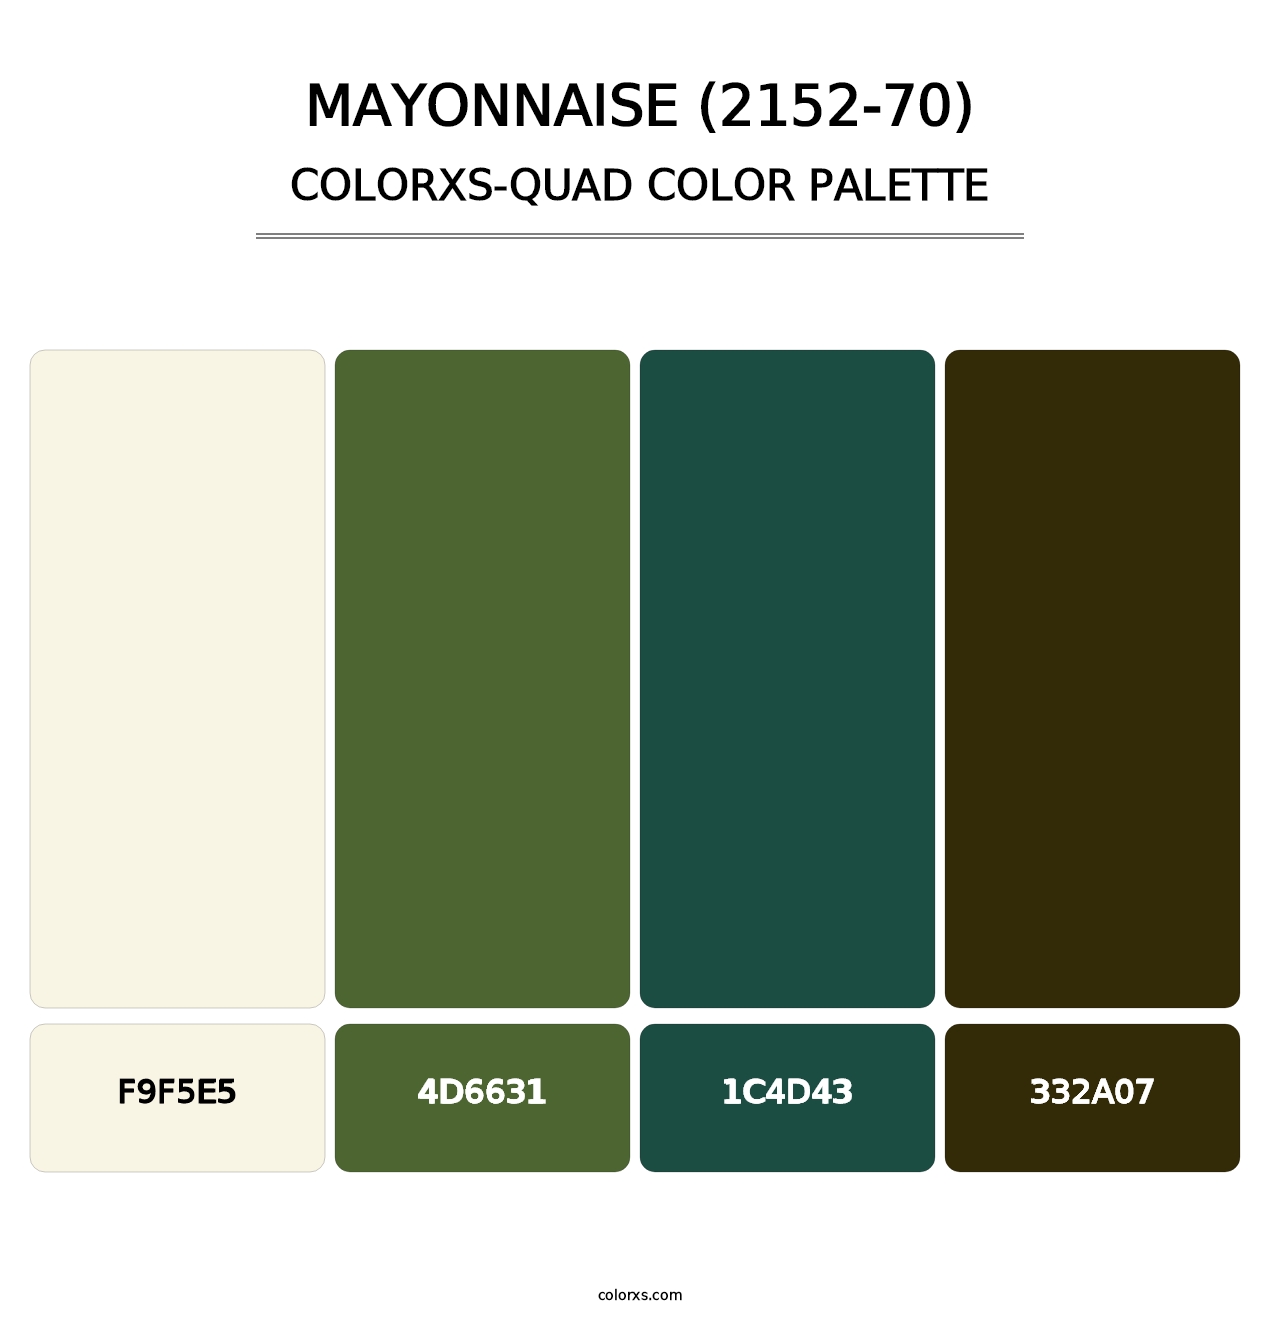 Mayonnaise (2152-70) - Colorxs Quad Palette